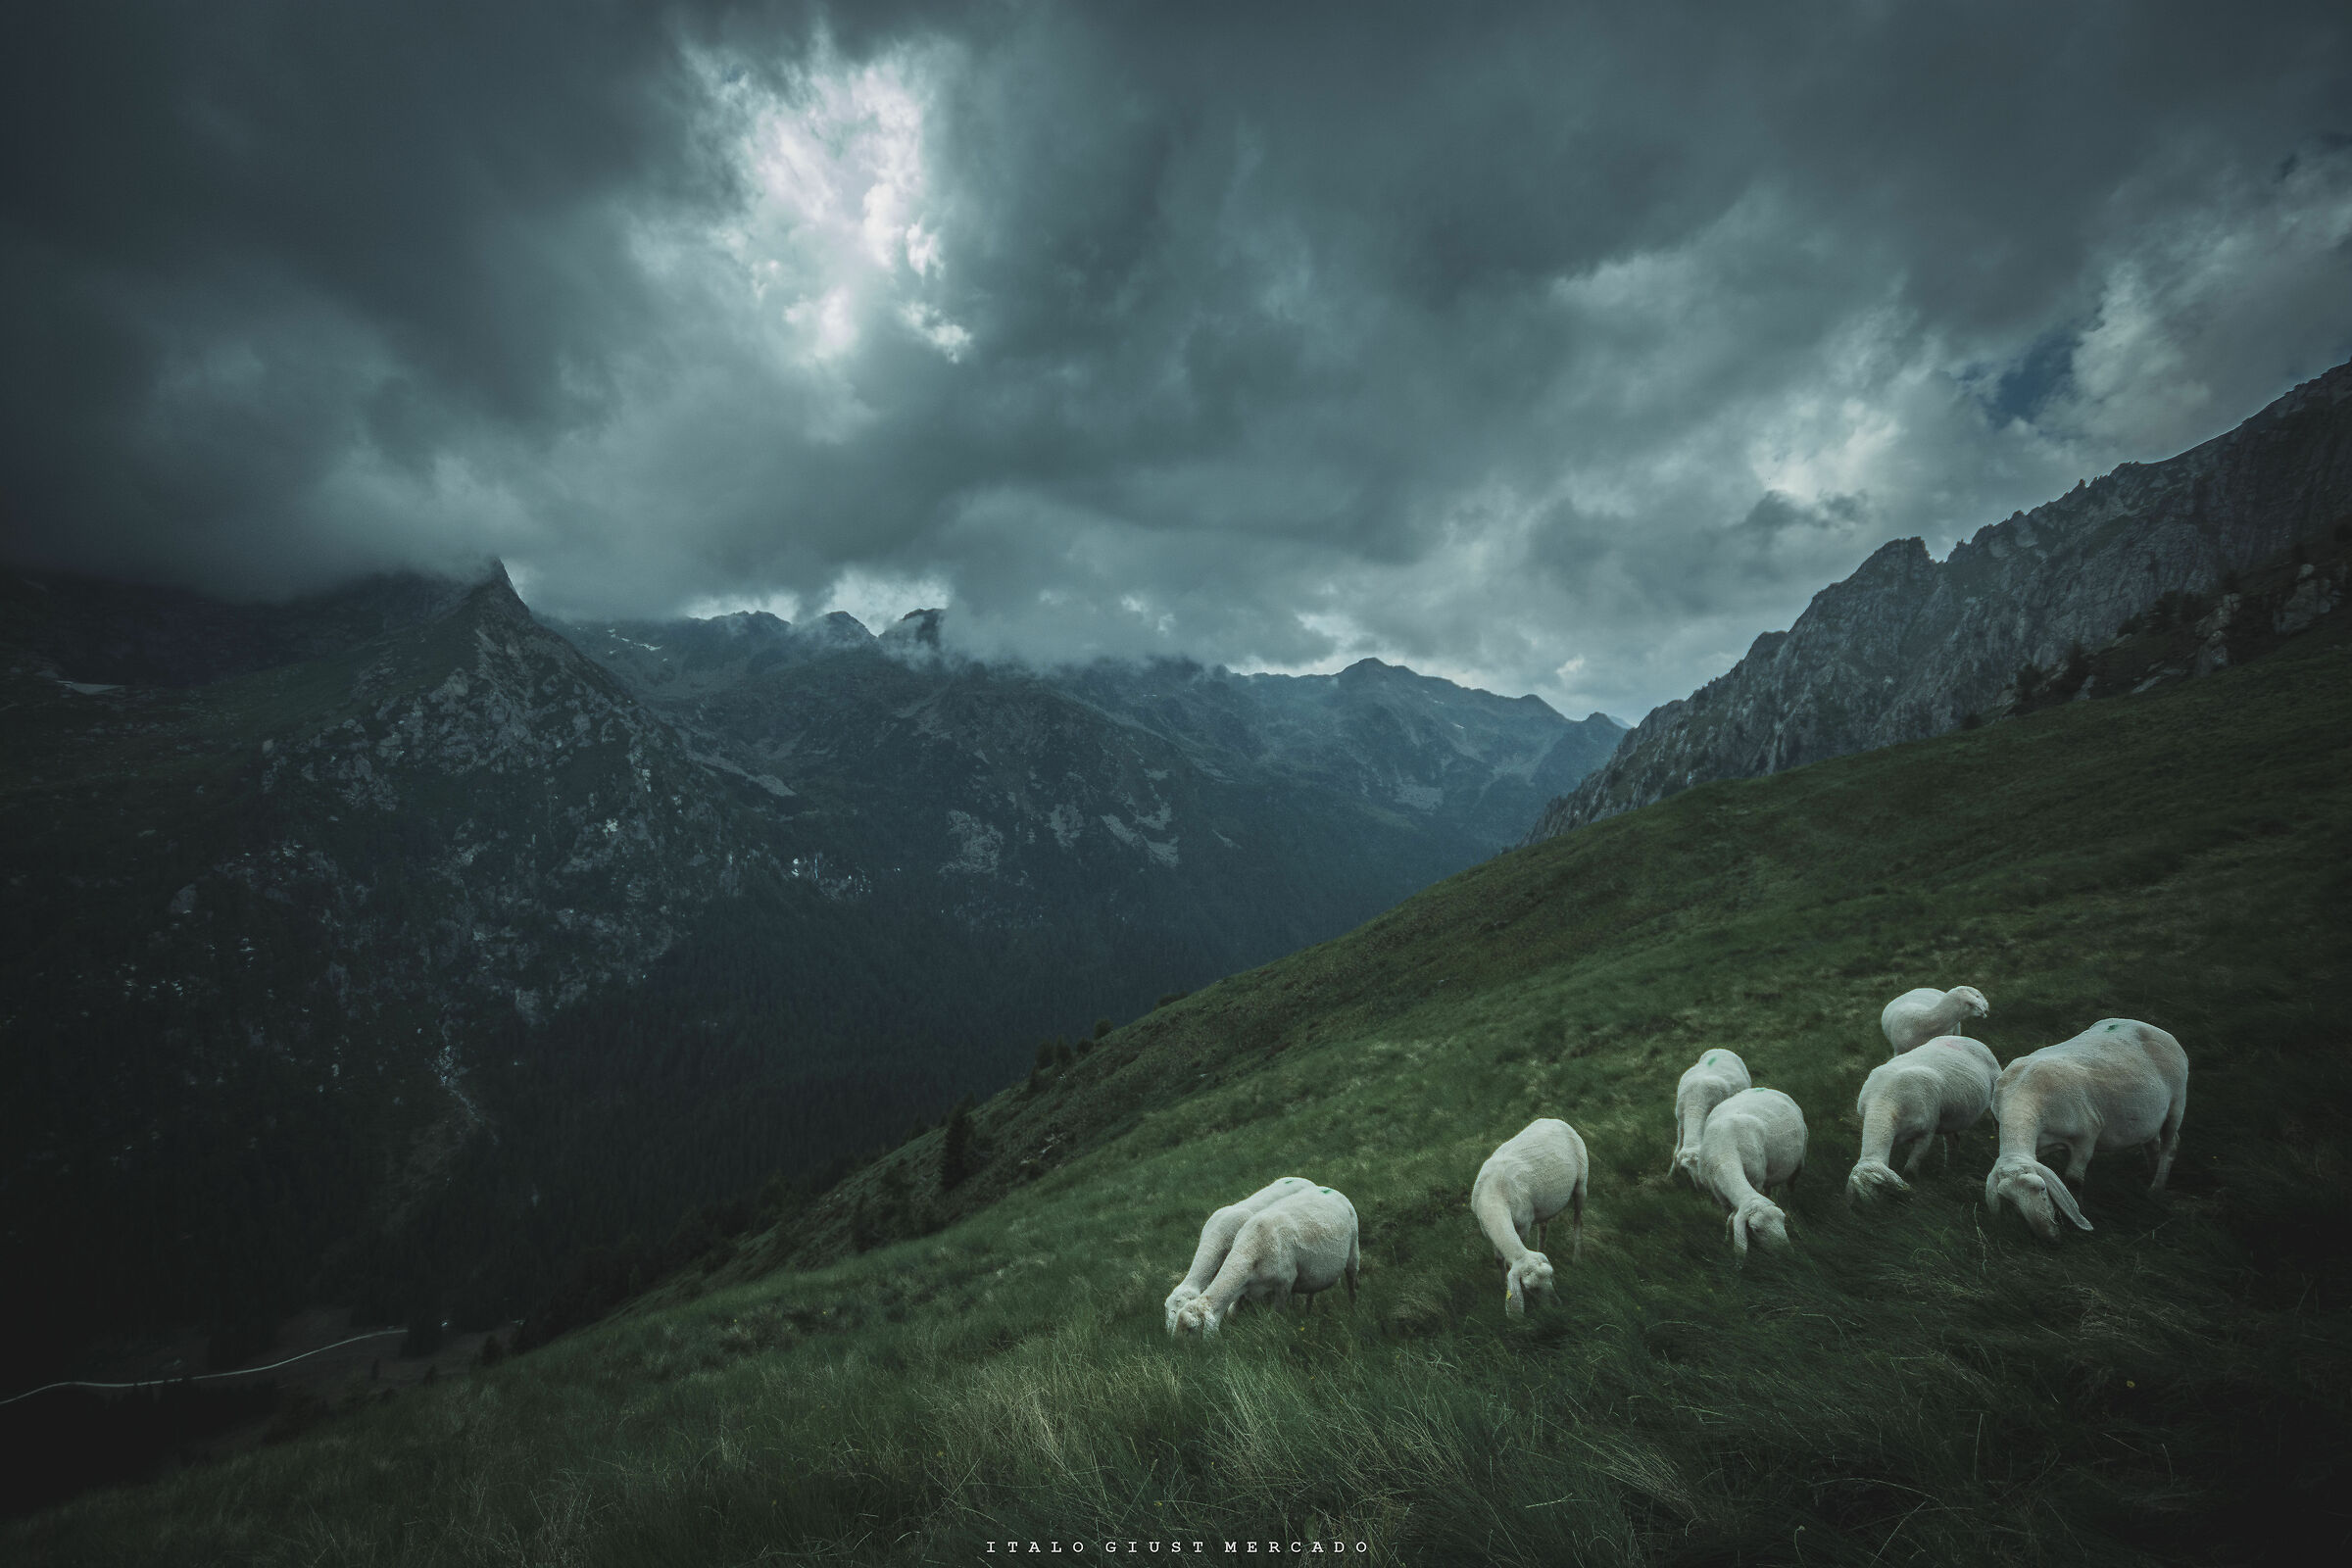 Nuvole minacciose su pecore ignare...